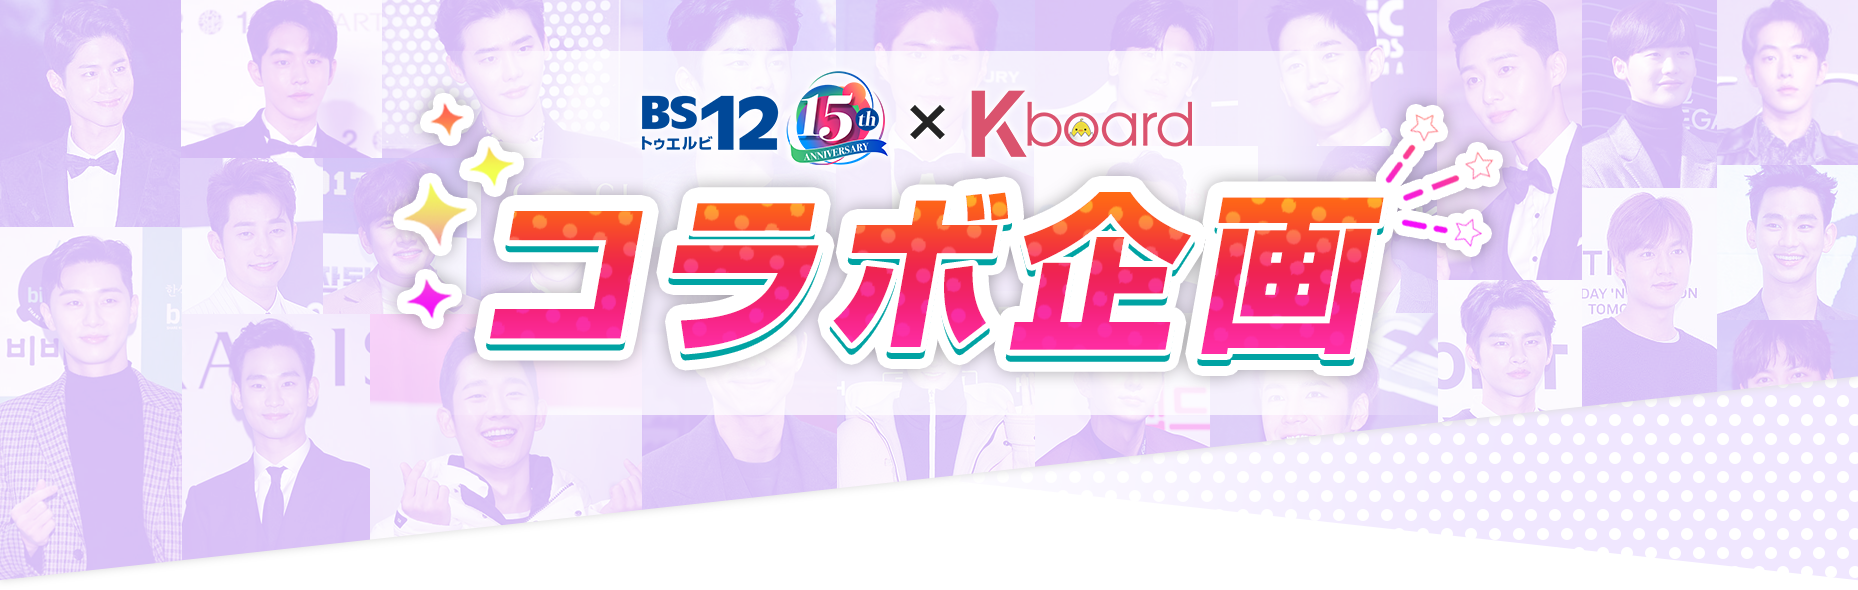 BS12 トゥエルビ × K-board コラボ企画